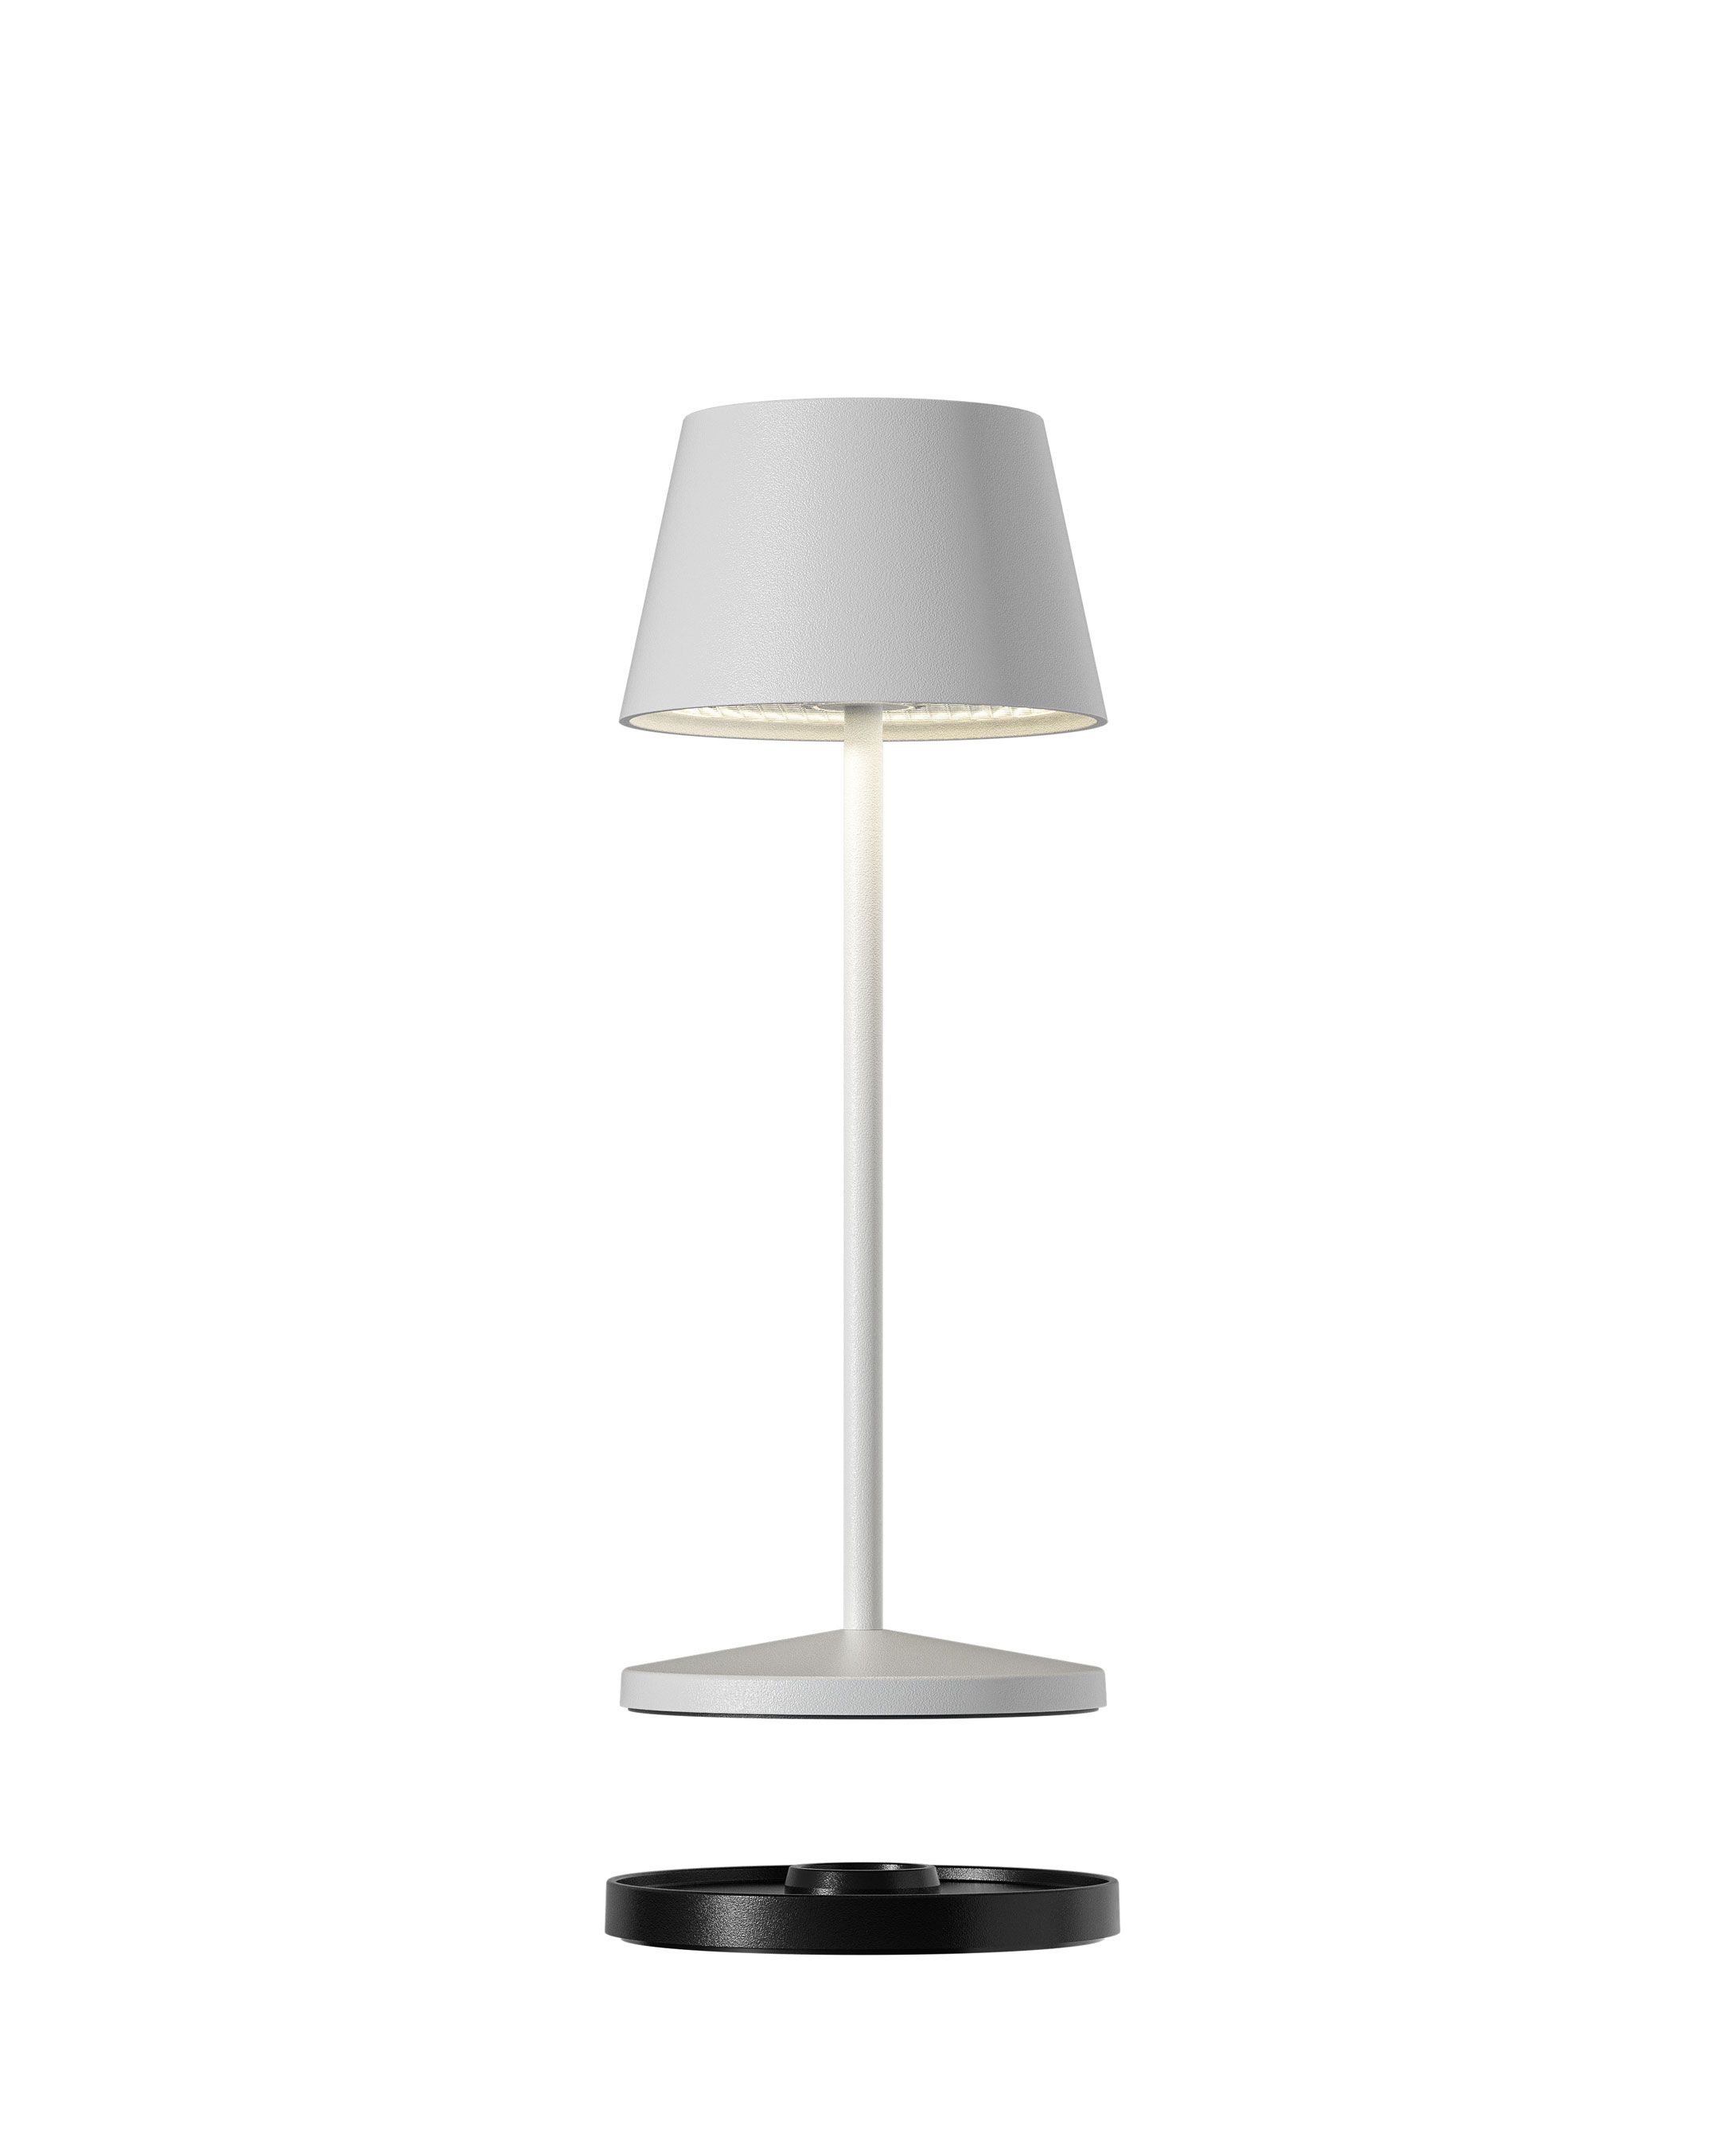 Seoul Micro LED buiten tafellamp | oplaadbaar (accu) | wit | Dimbaar |waterdicht IP65 | made by Villeroy & Boch